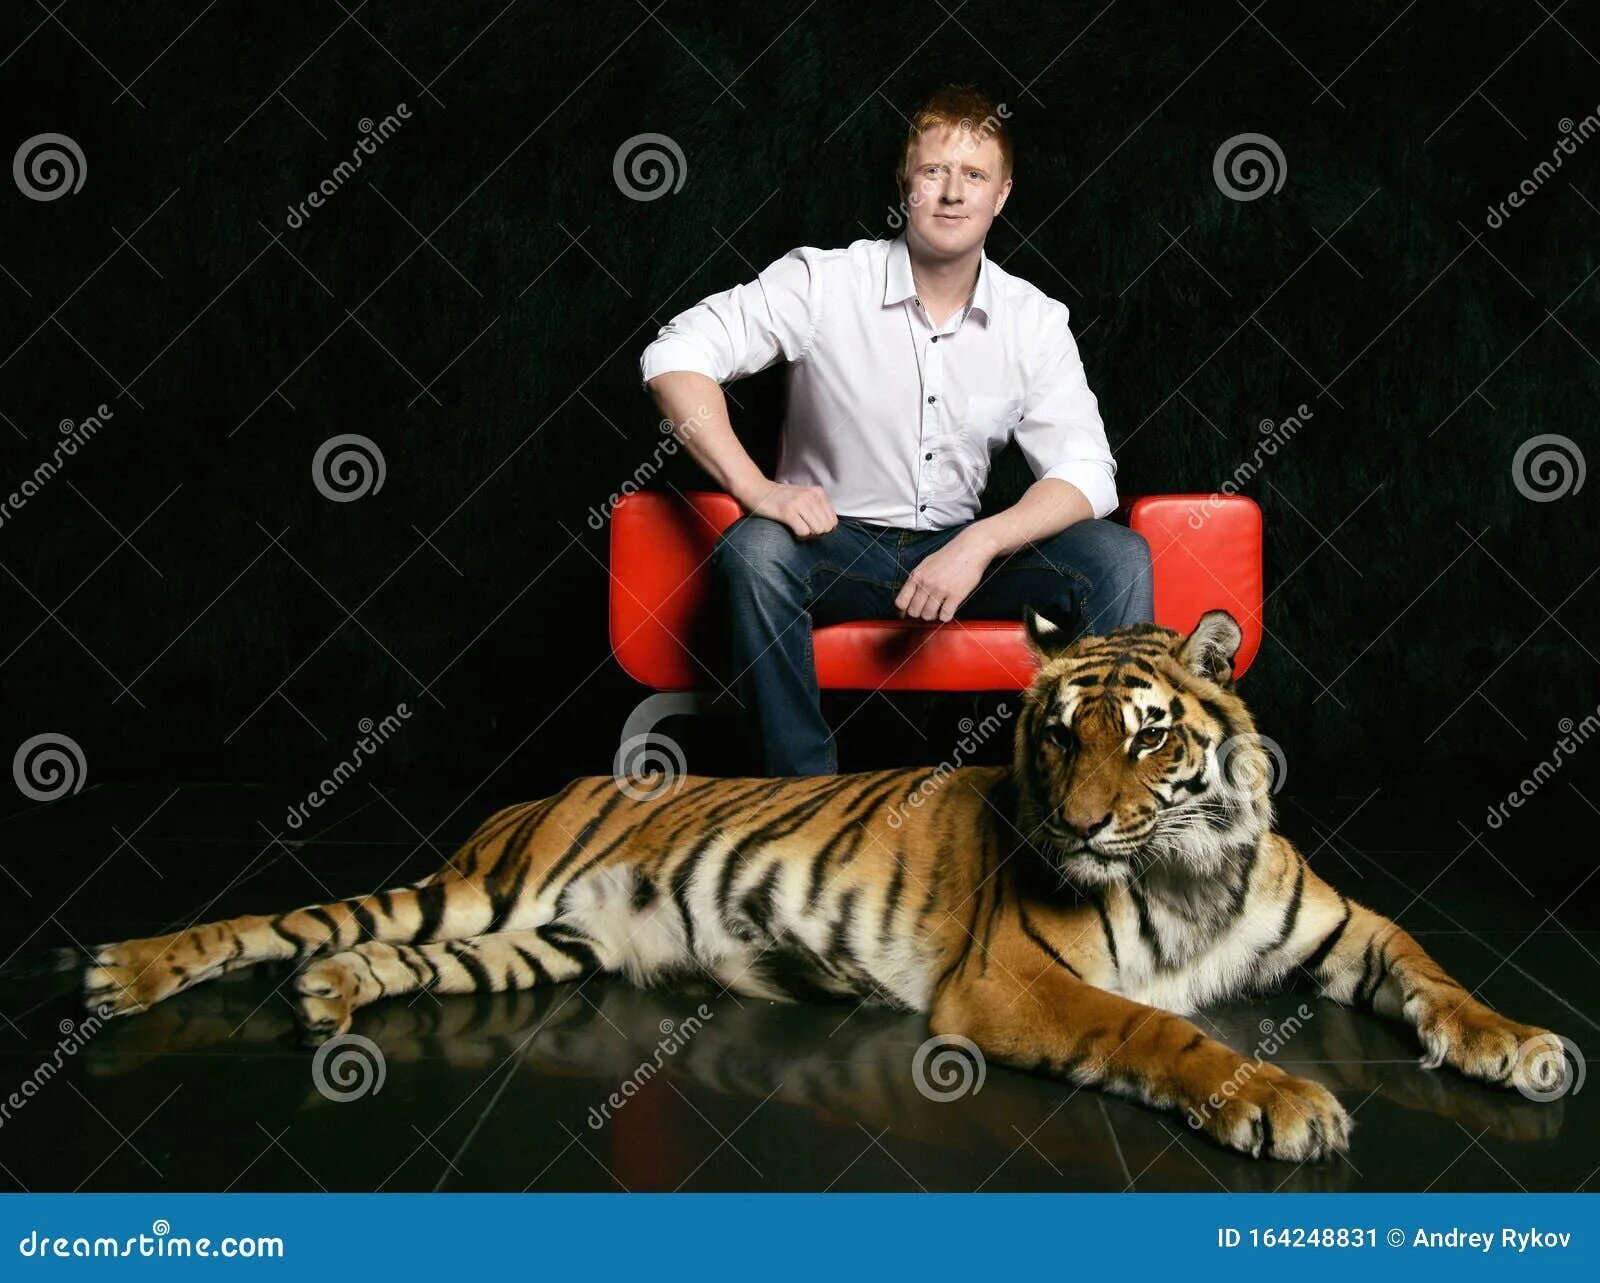 Мужчина тигр в браке. Знаменитости тигры. Тигр человек джинсы. Тигр в рубашке сидит на матрасе видео.